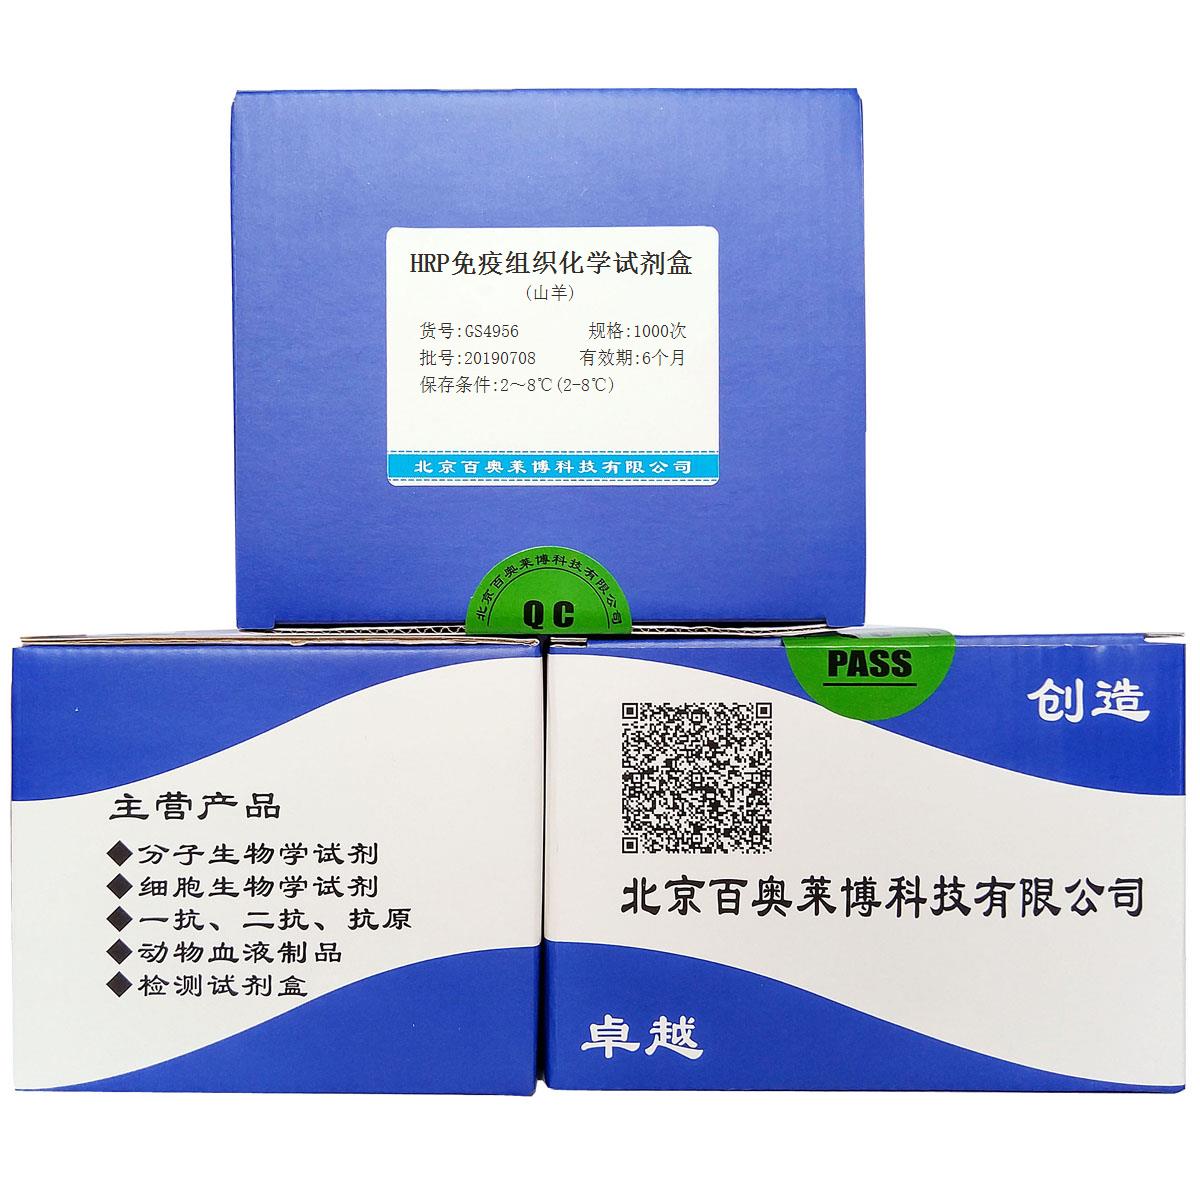 HRP免疫组织化学试剂盒(山羊)北京供应商